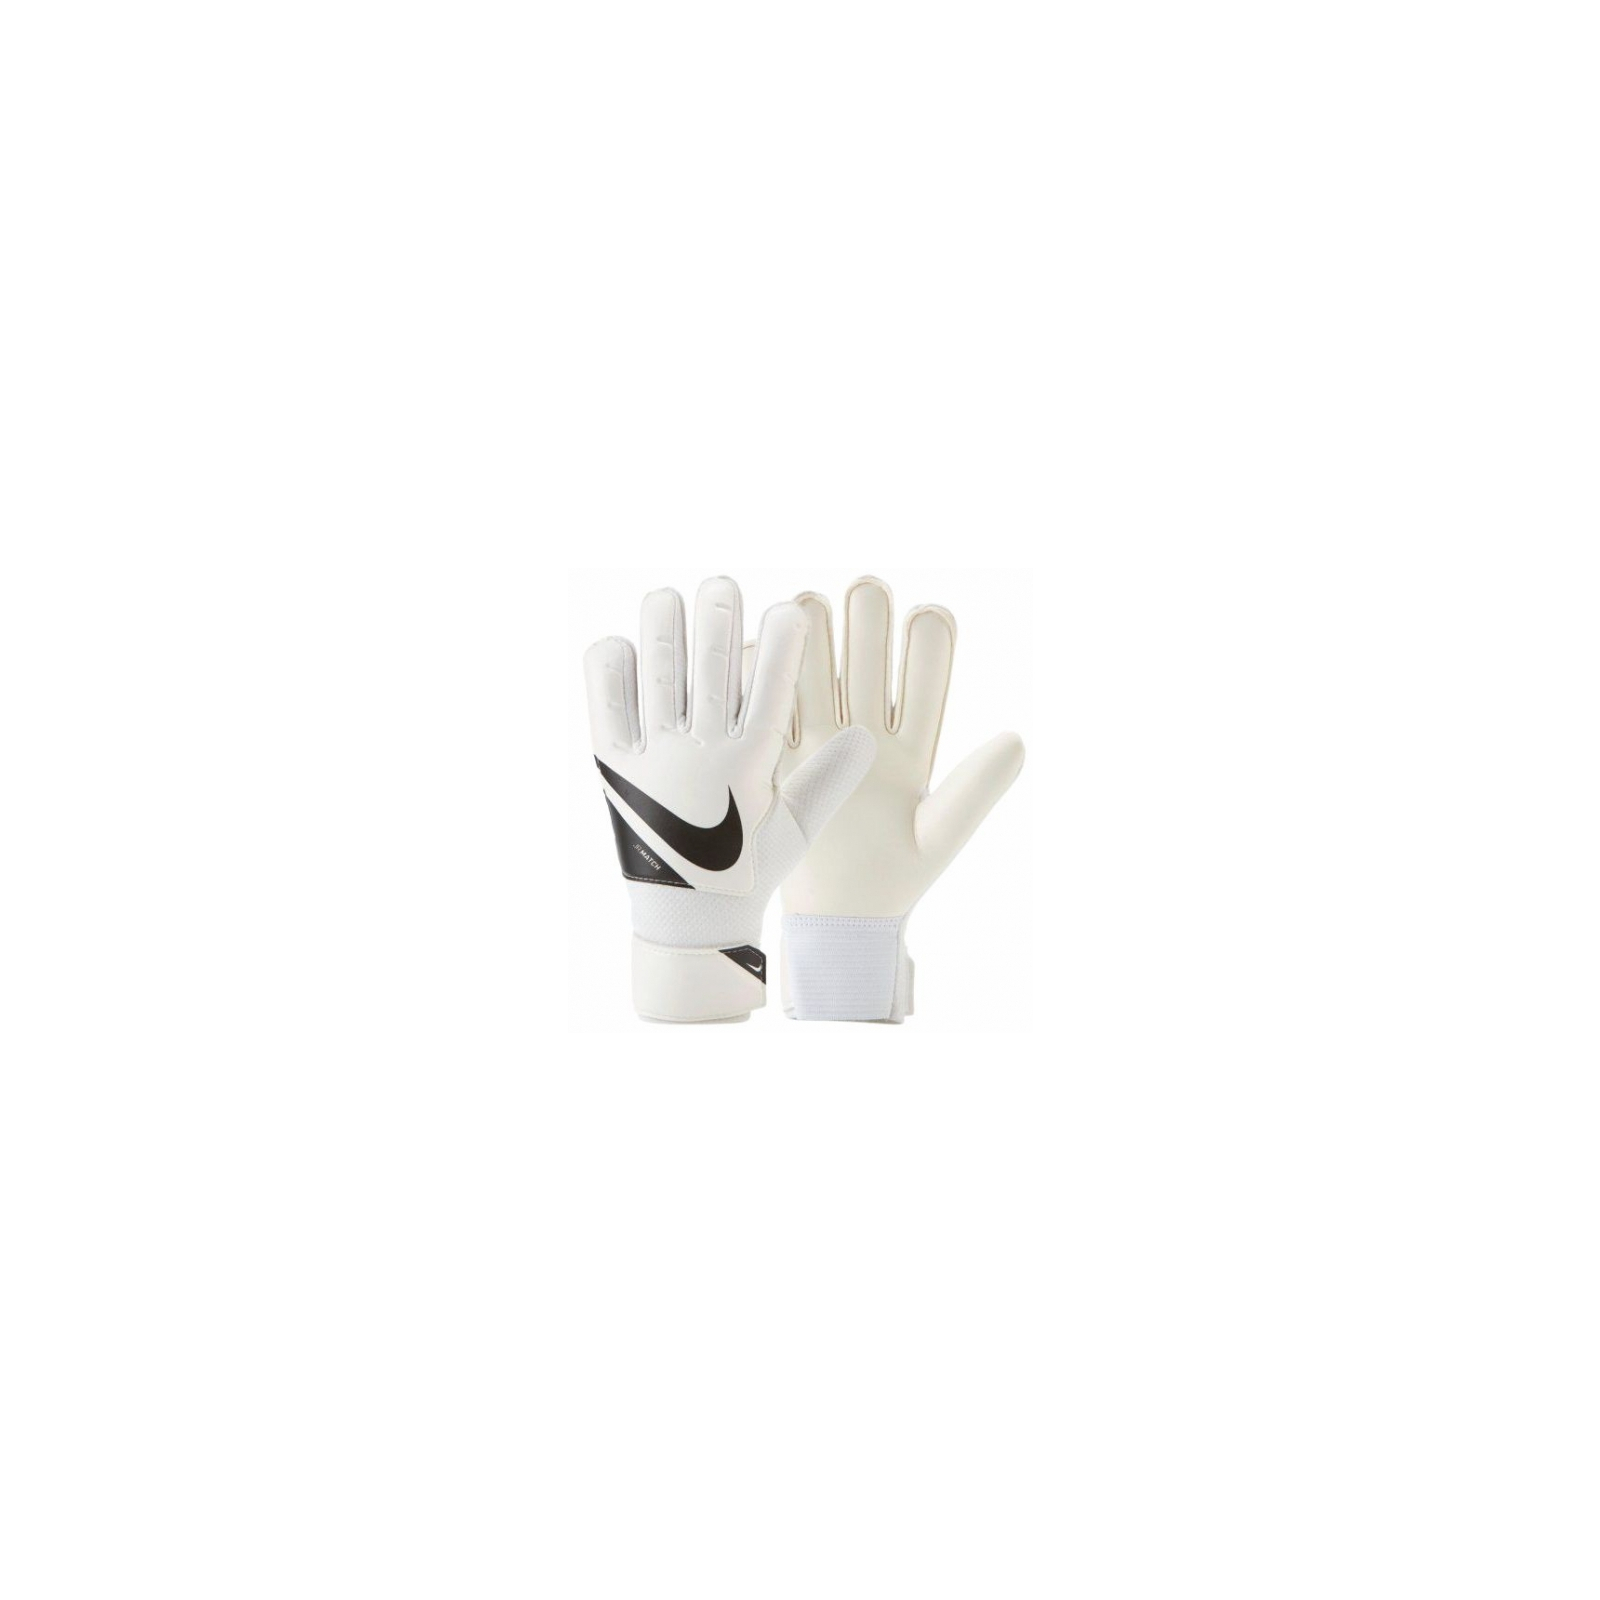 Вратарские перчатки Nike NK GK Match JR - FA20 CQ7795-010 чорний Діт 7 (194493919175)